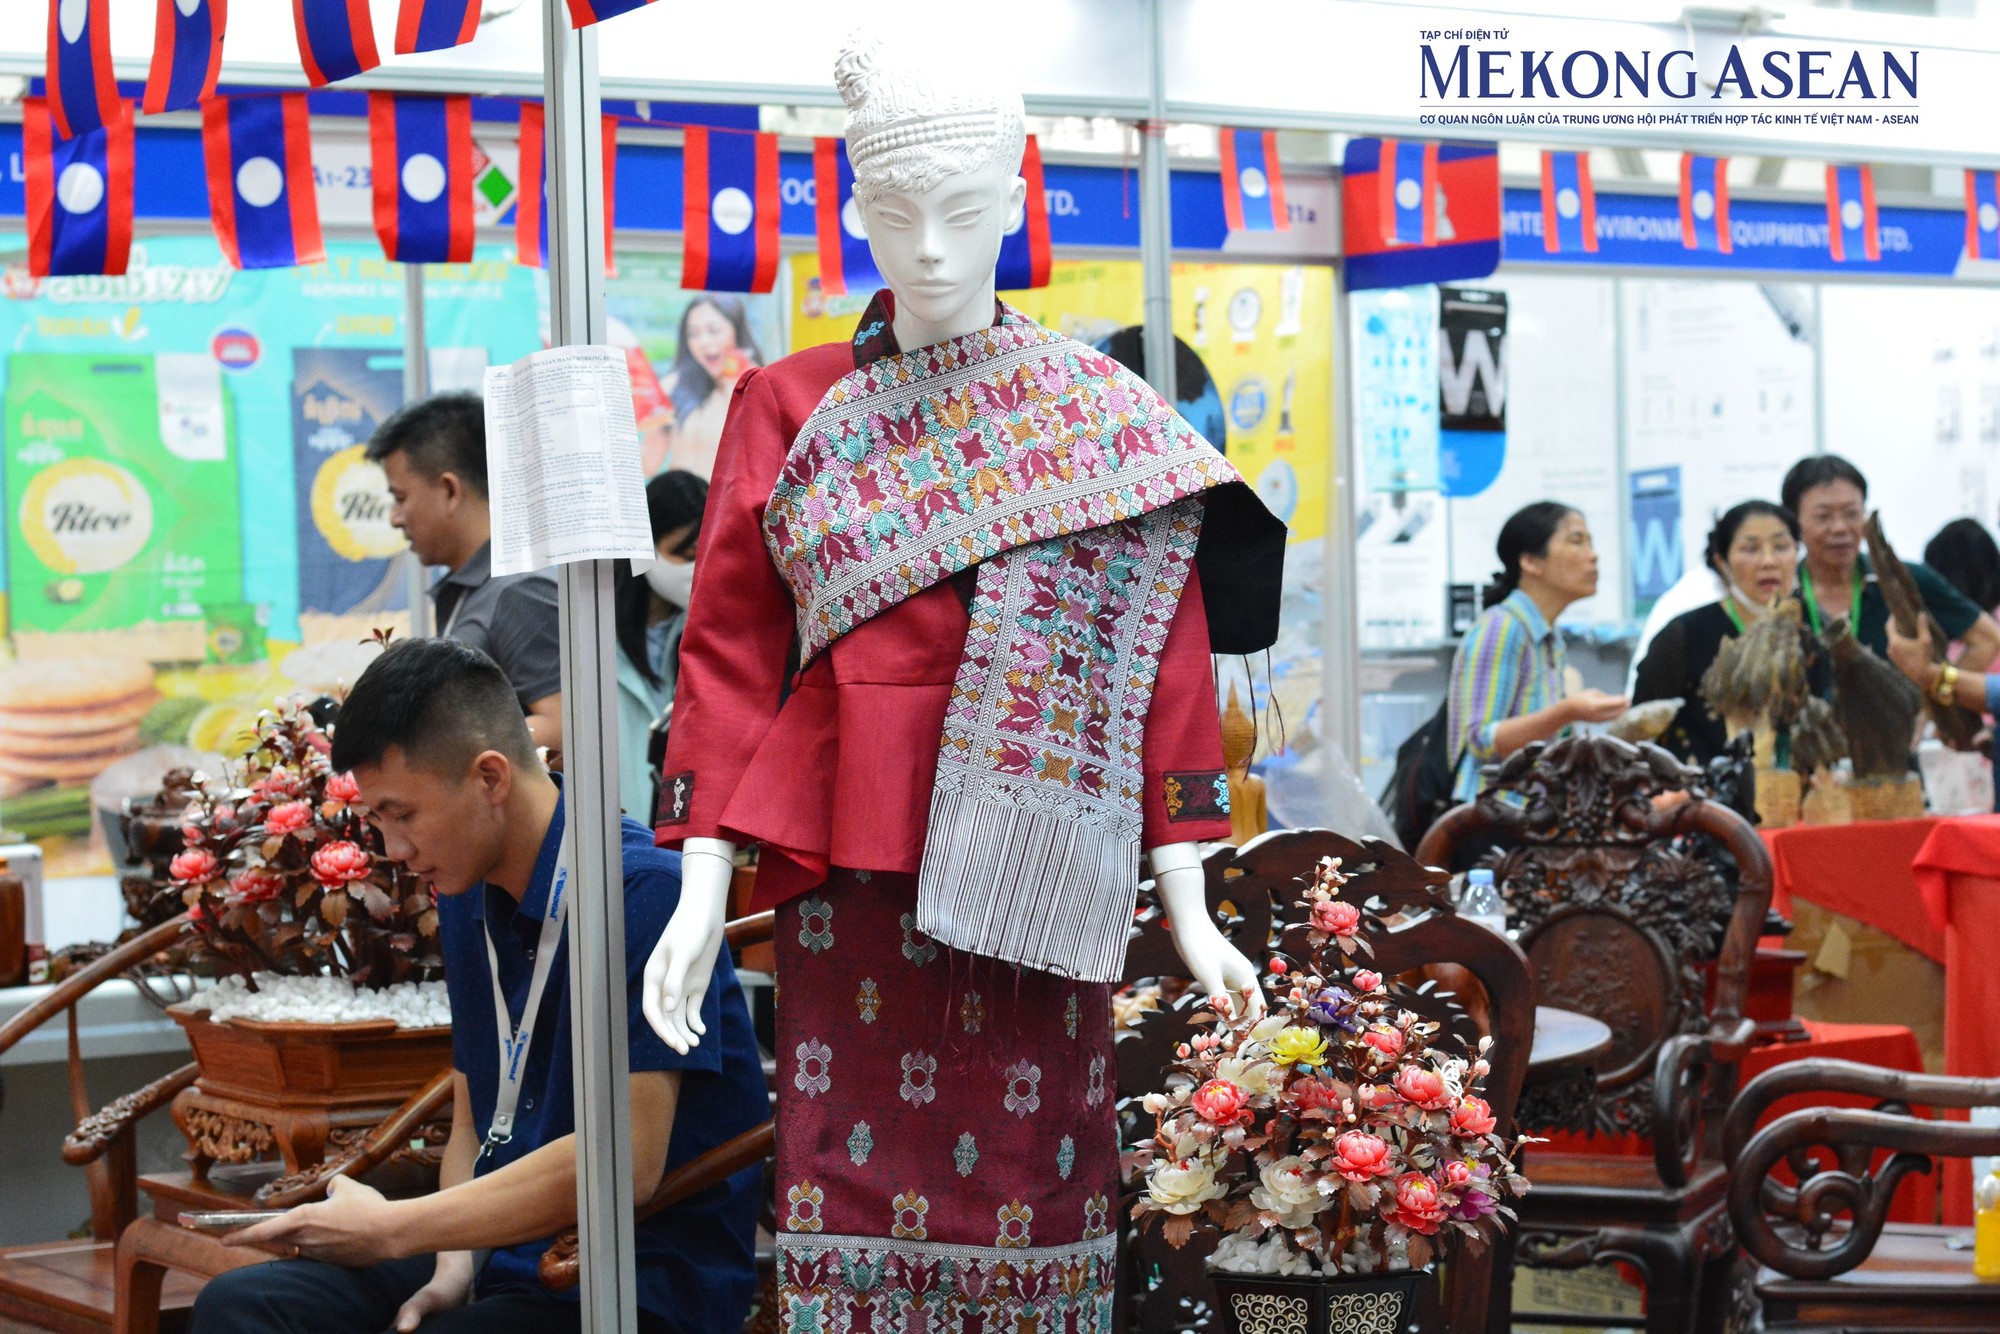 Gian h&agrave;ng L&agrave;o mang đến c&aacute;c sản phẩm đầy truyền thống như trang phục, c&aacute;c đồ thủ c&ocirc;ng mỹ nghệ. Ảnh: L&ecirc; Hồng Nhung - Mekong ASEAN